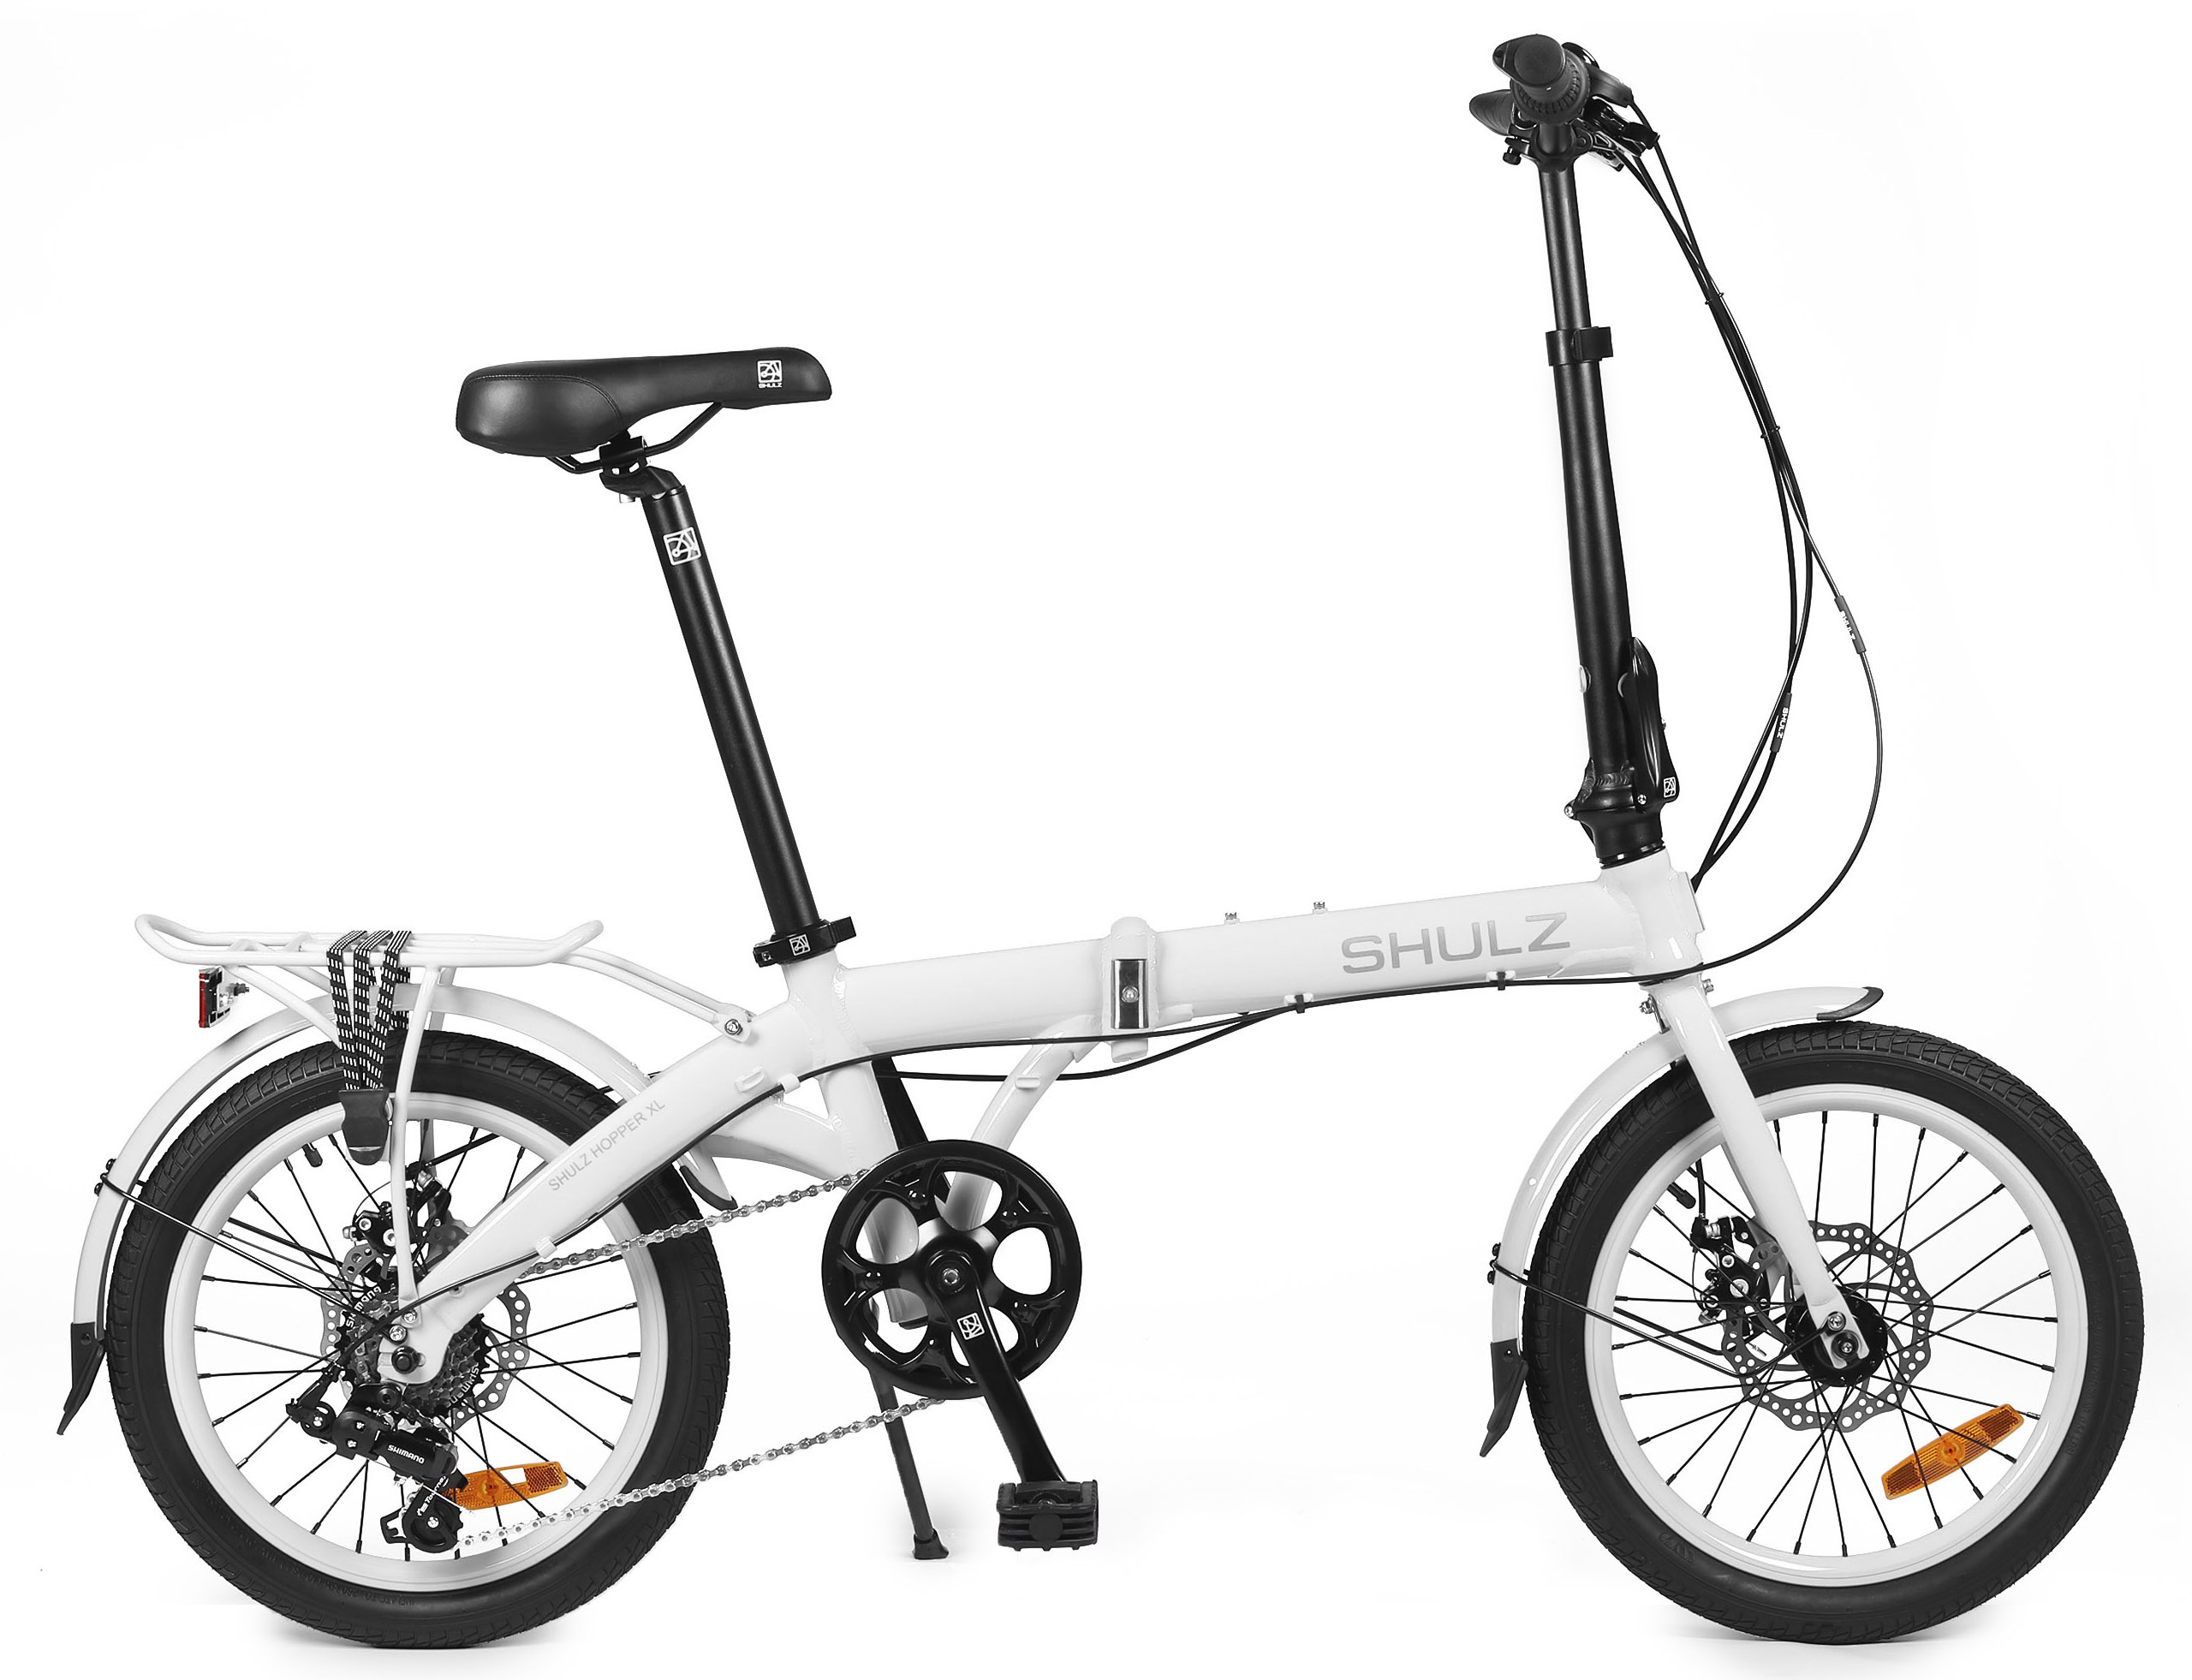  Отзывы о Складном велосипеде Shulz Hopper XL 2020